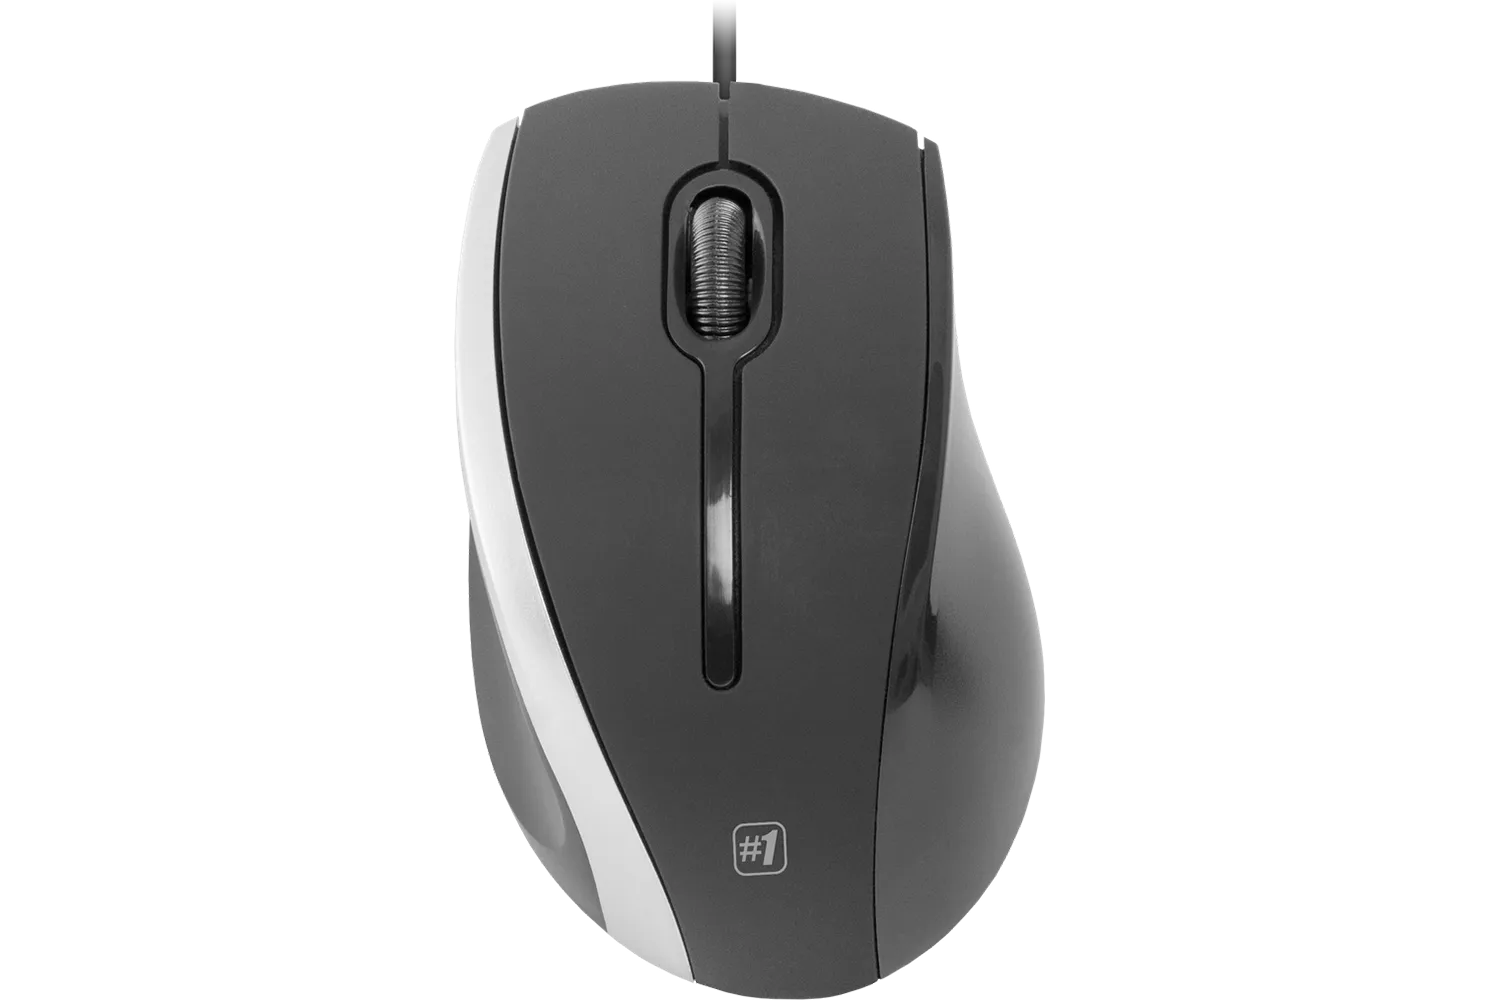 Мышь DEFENDER MM-340, черная/серая, USB, проводная, 3 кнопки, 1000 dpi, кабель 1,3м. Количество кноп